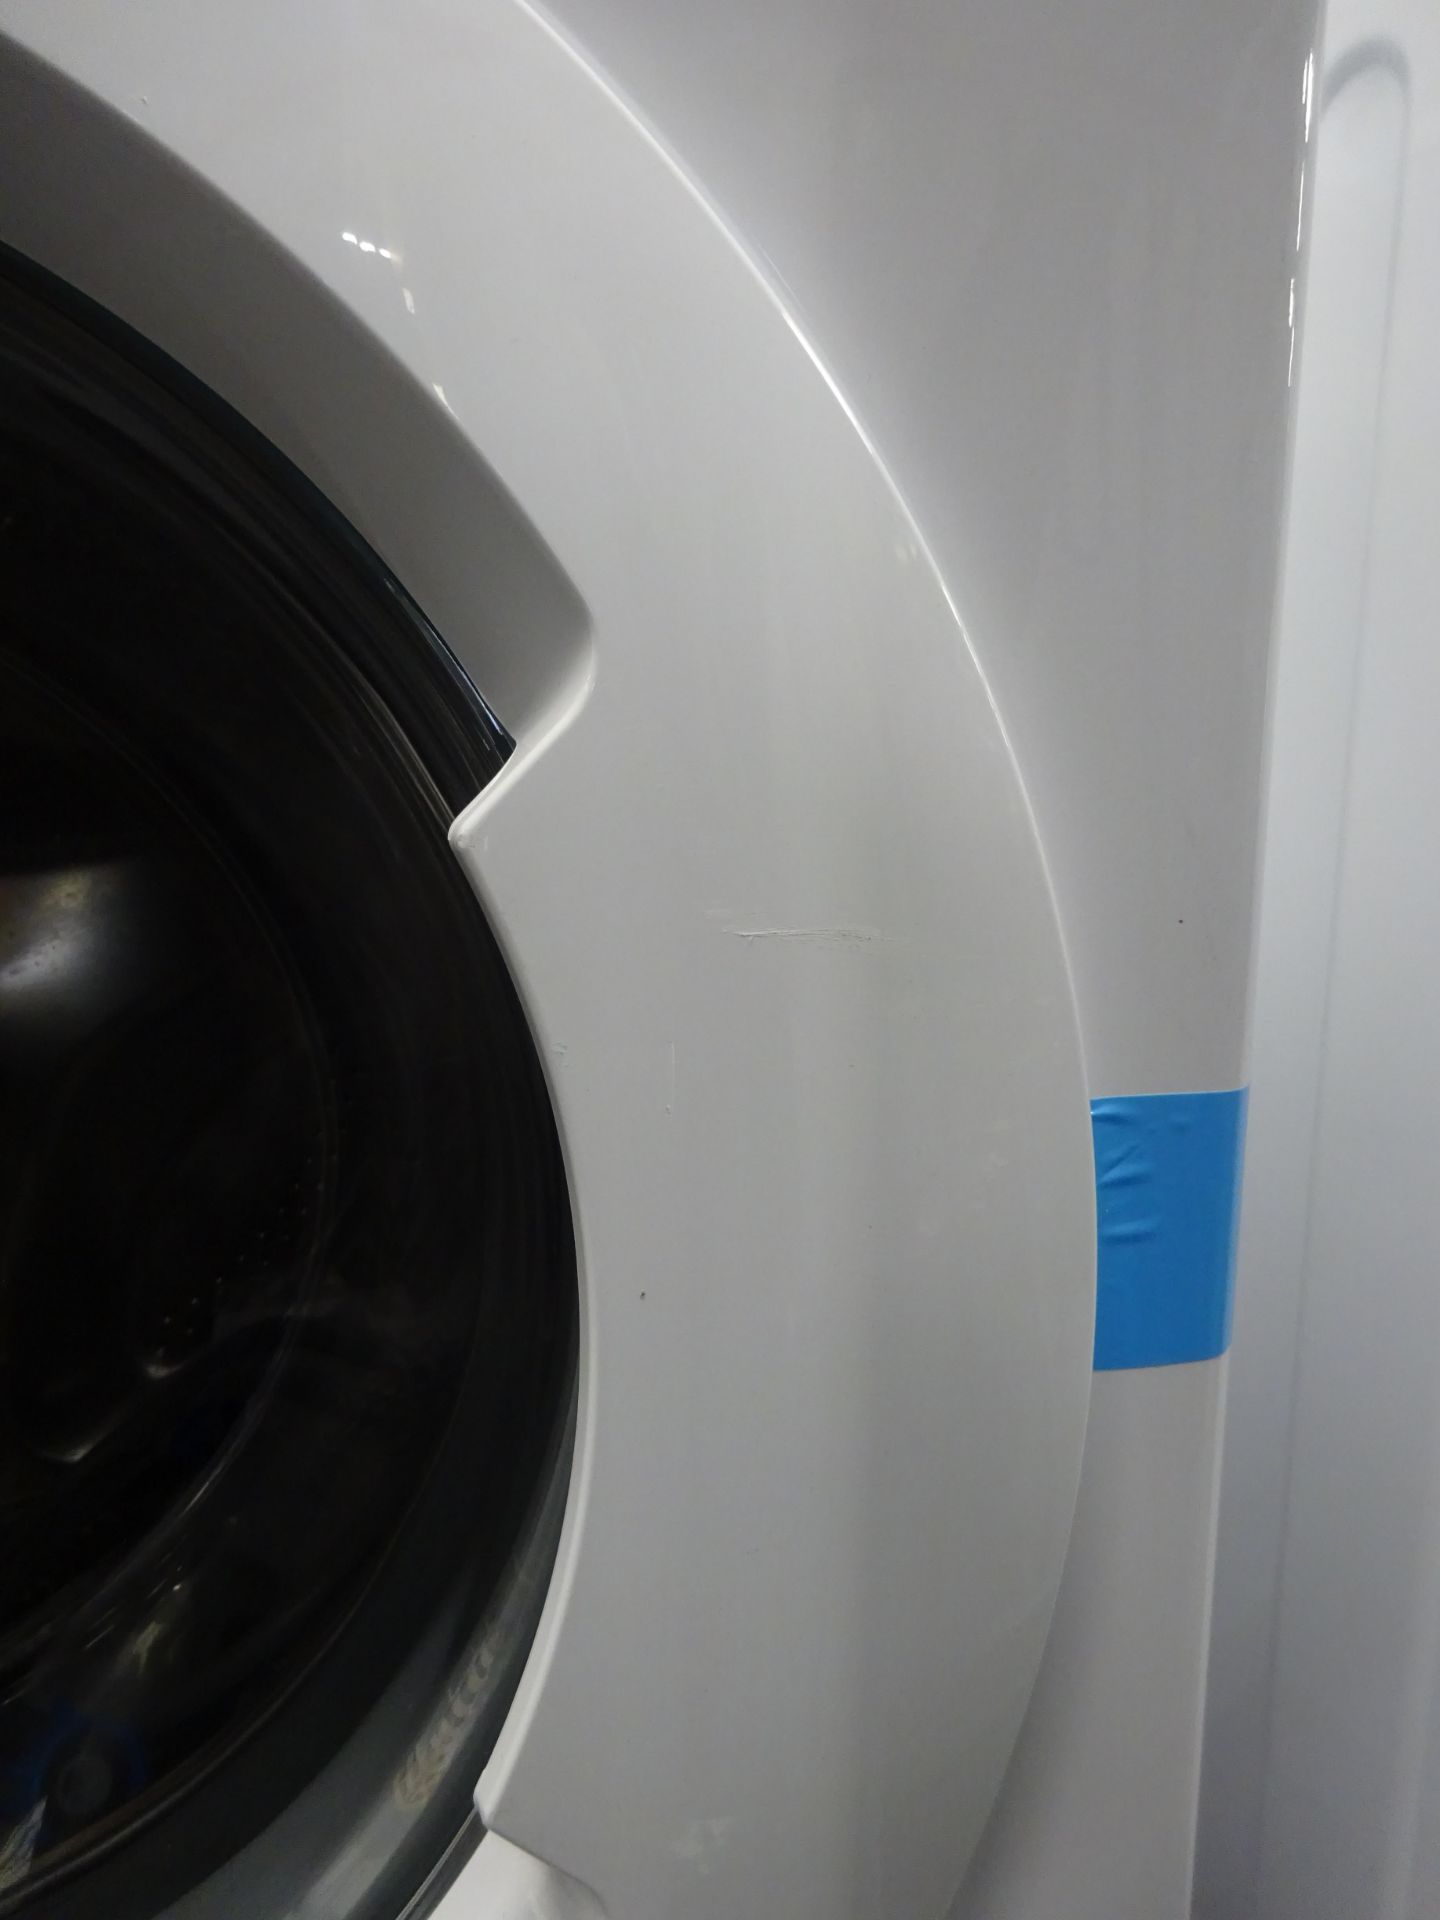 Indesit BWA81484XWUK 8KG 1400 Spin Washing Machine - White - ARGOS RRP £239.99 - Image 6 of 7